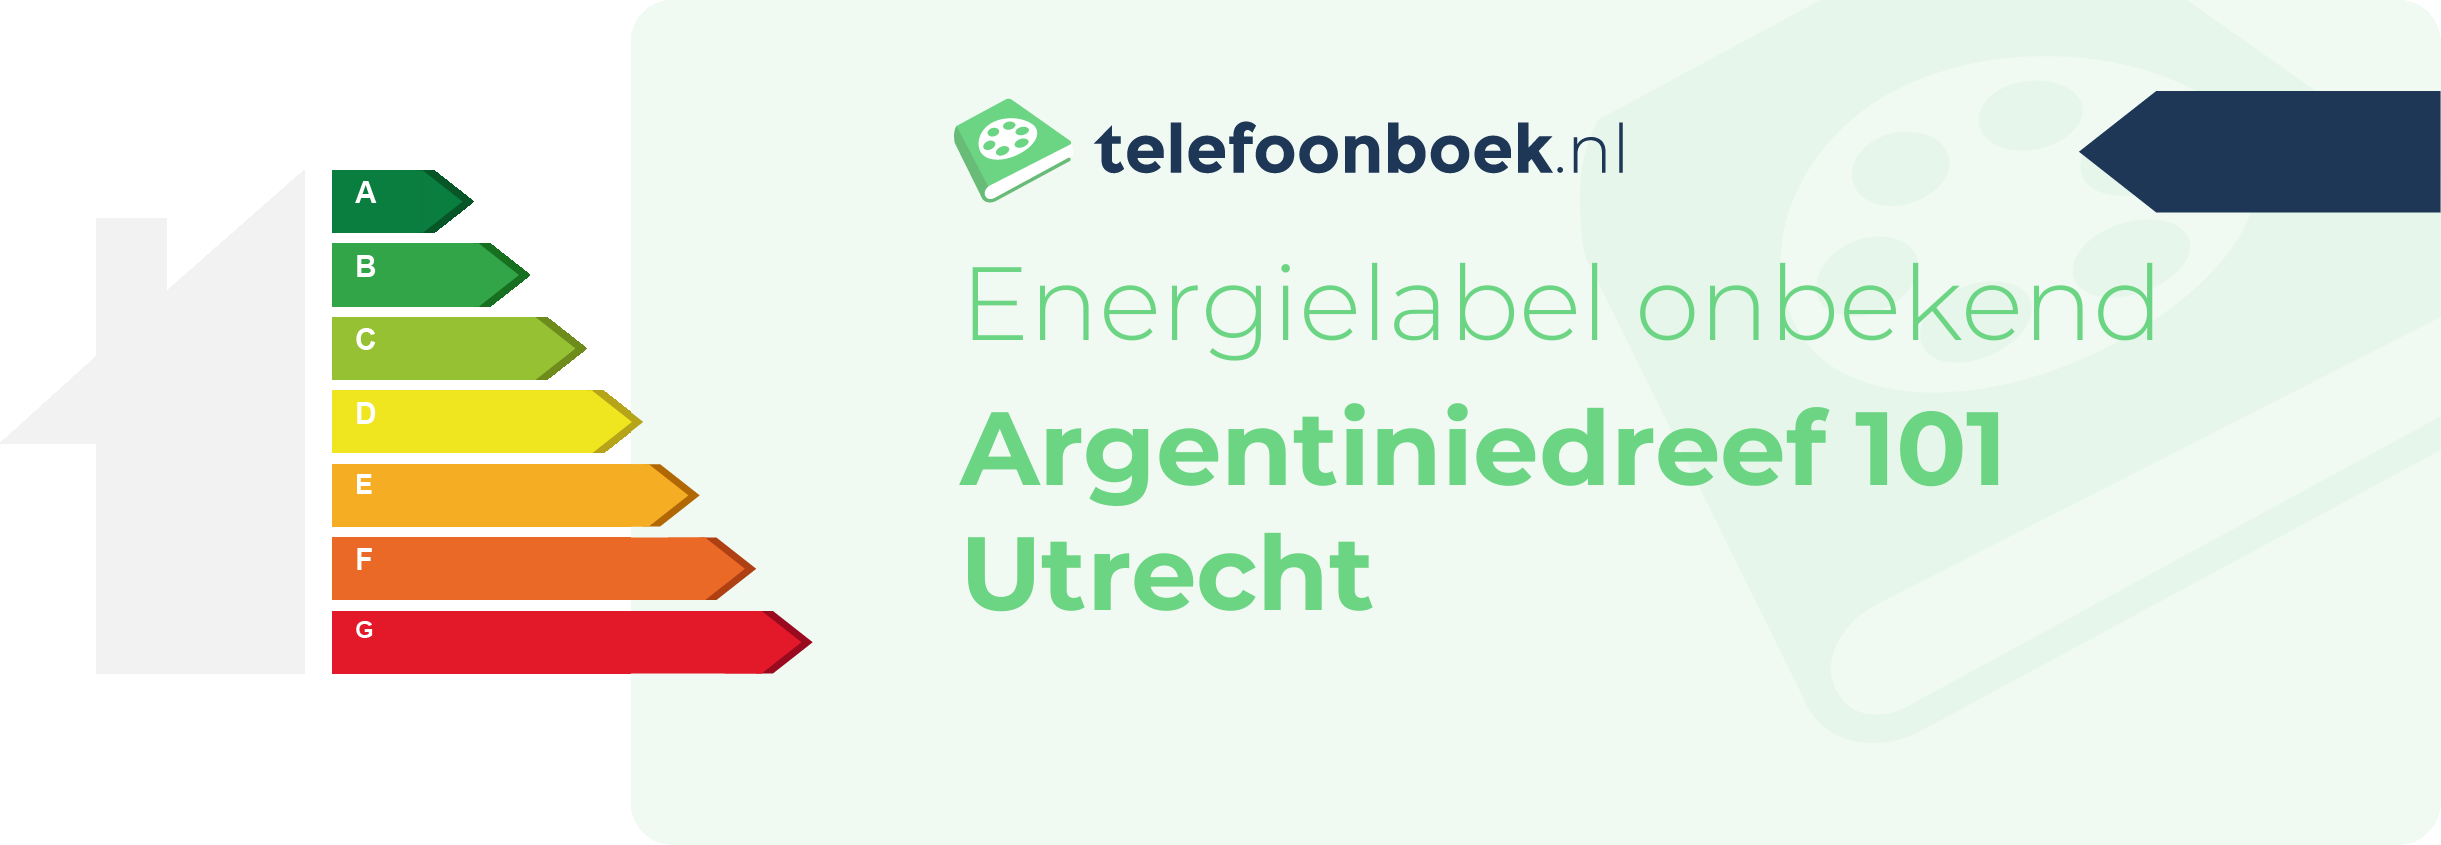 Energielabel Argentiniedreef 101 Utrecht